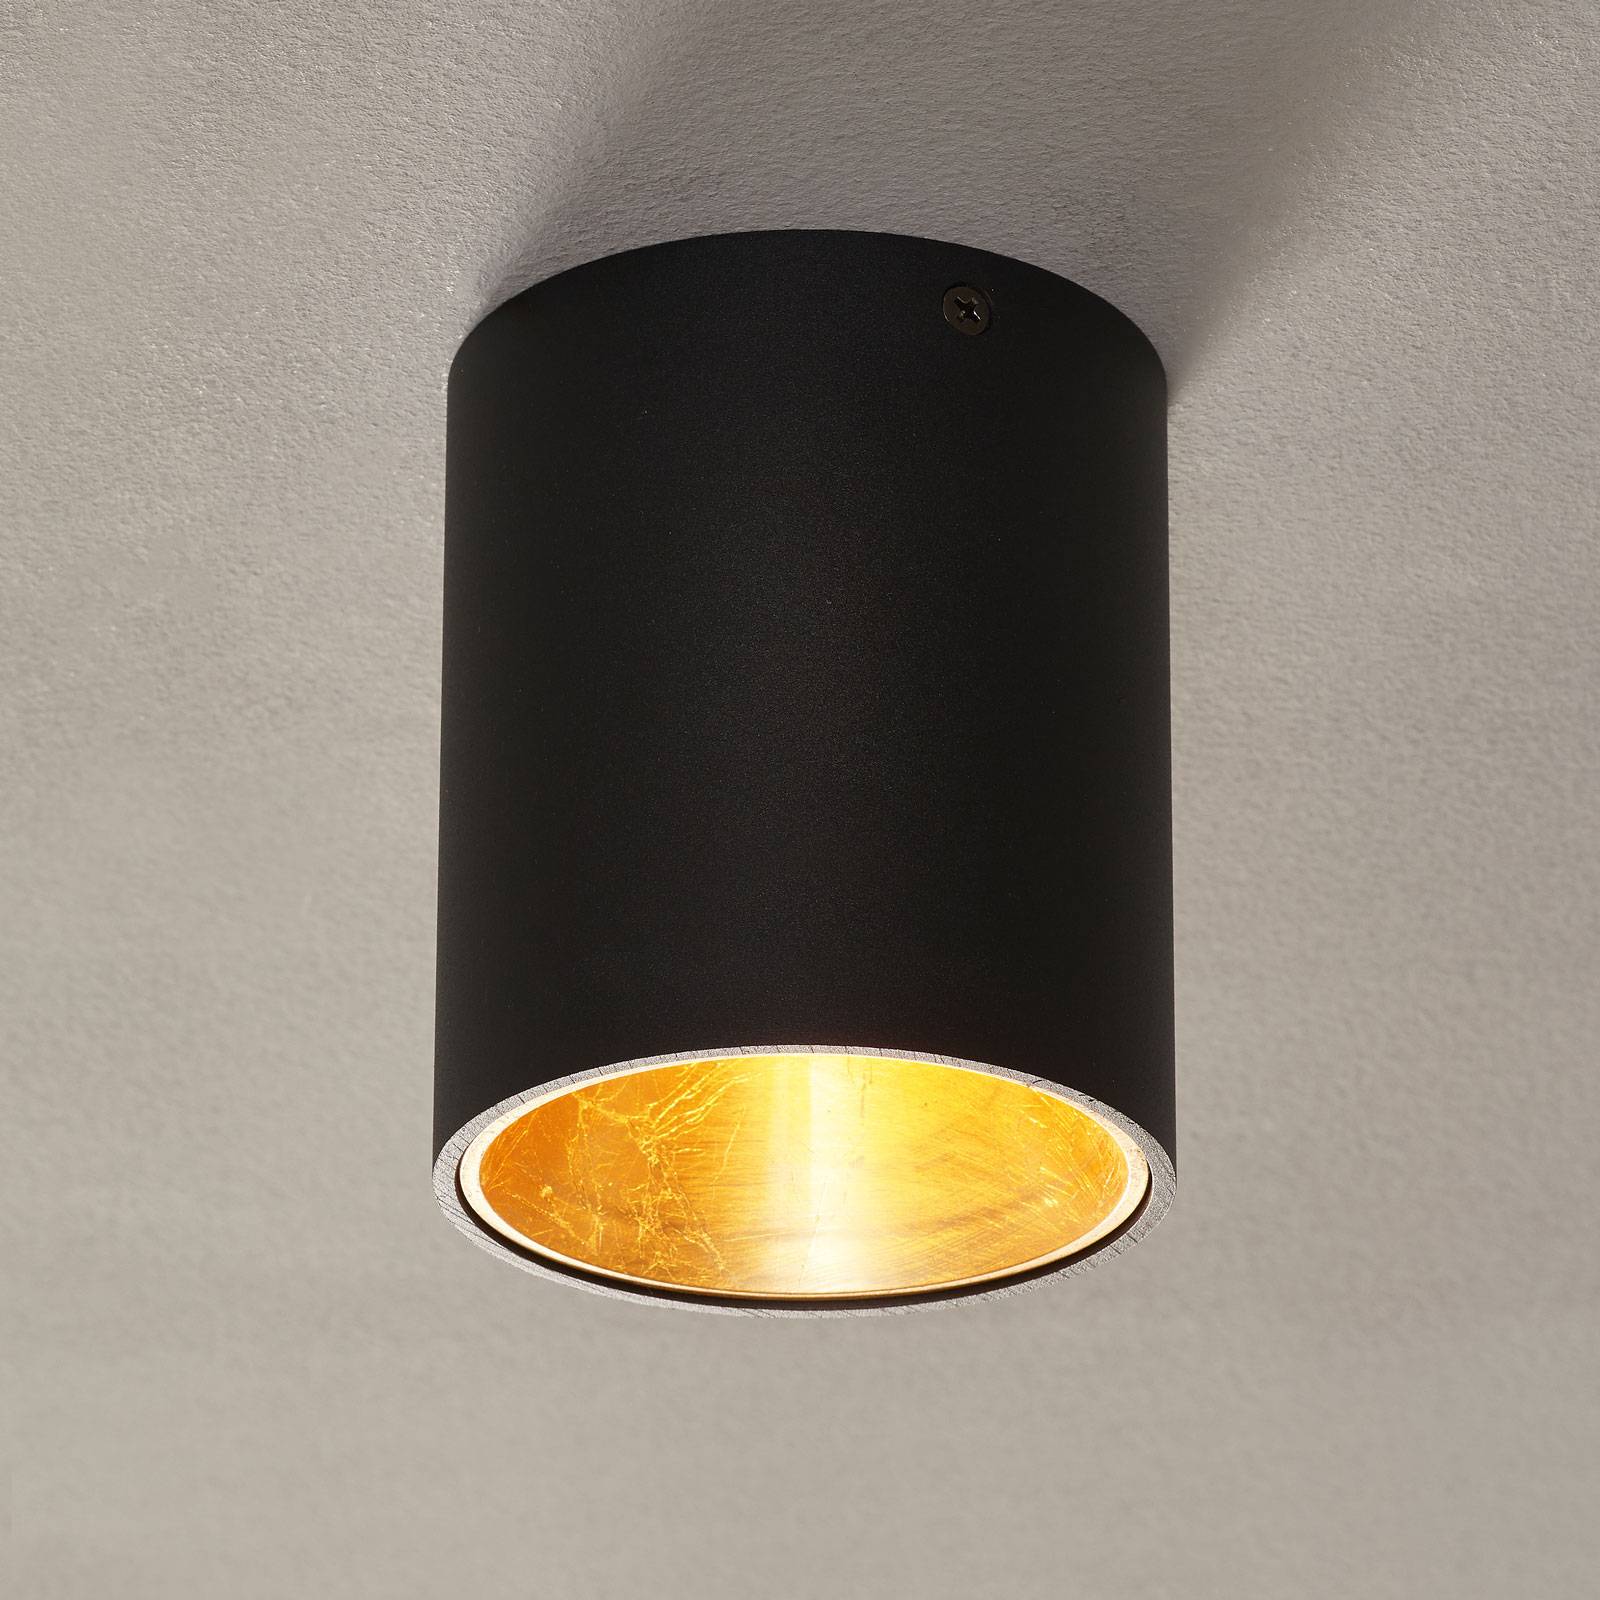 Lampa sufitowa LED Polasso okrągła, czarno-złota